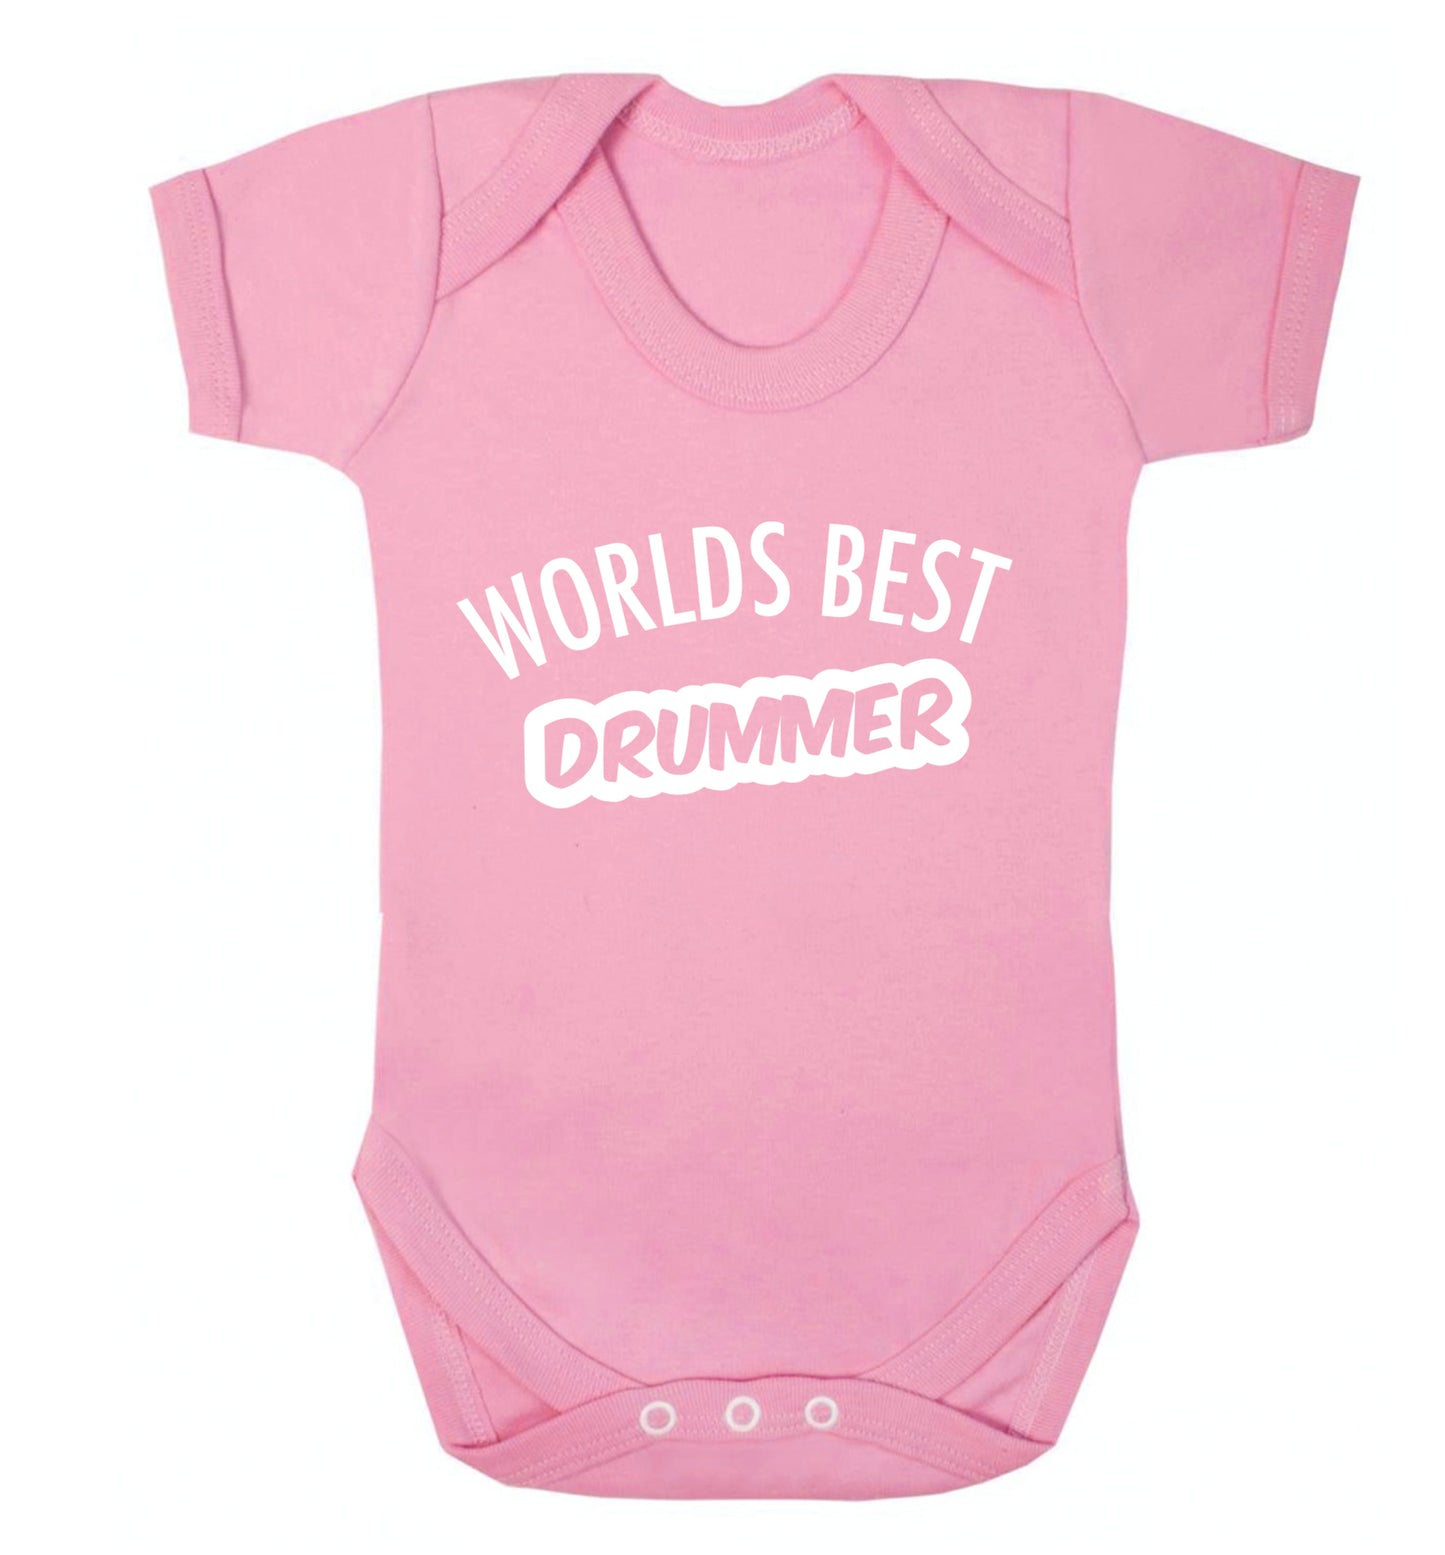 Worlds best drummer Baby Vest pale pink 18-24 months